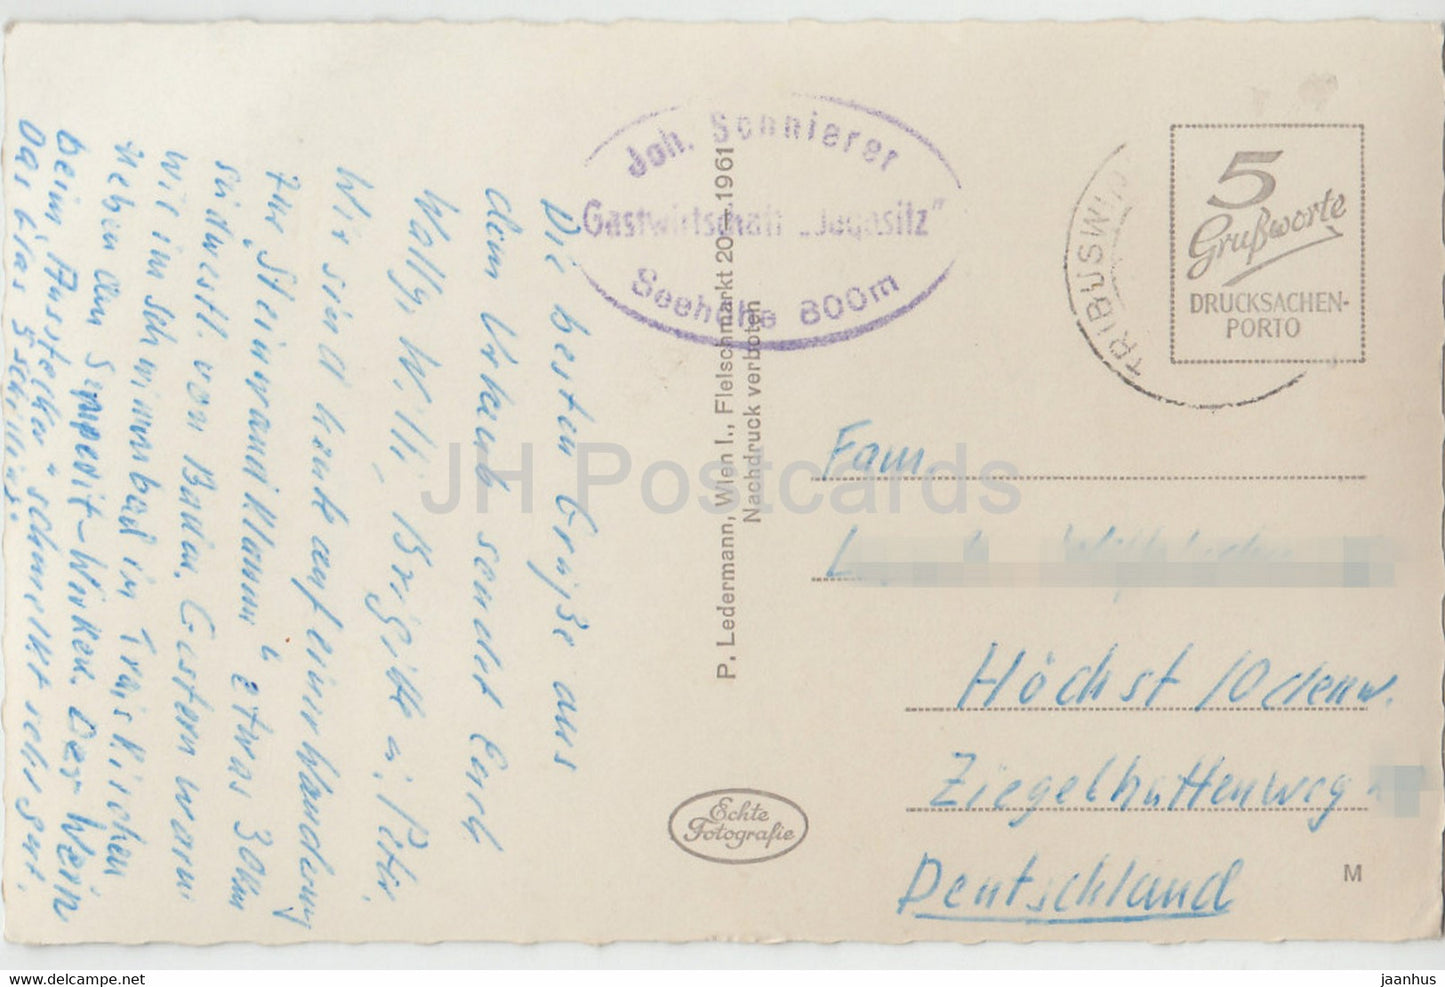 Steinwandklamm - carte postale ancienne - Autriche - occasion